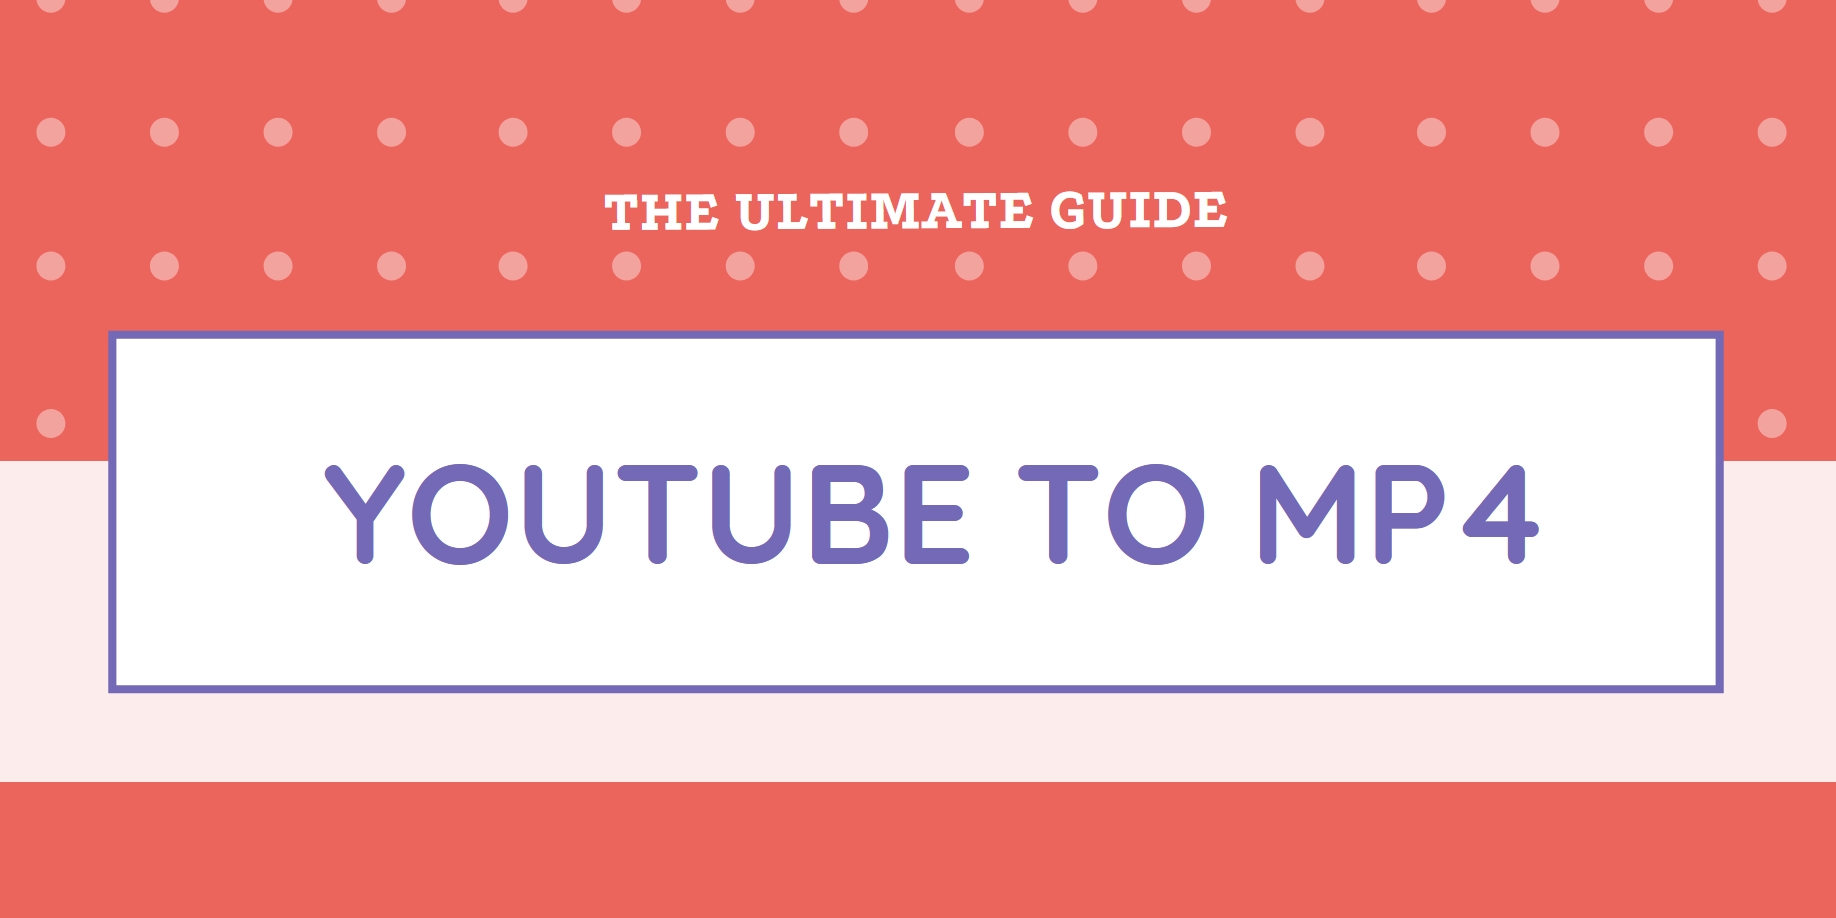 Convertisseur Youtube en MP4 en ligne gratuit : Le guide ultime